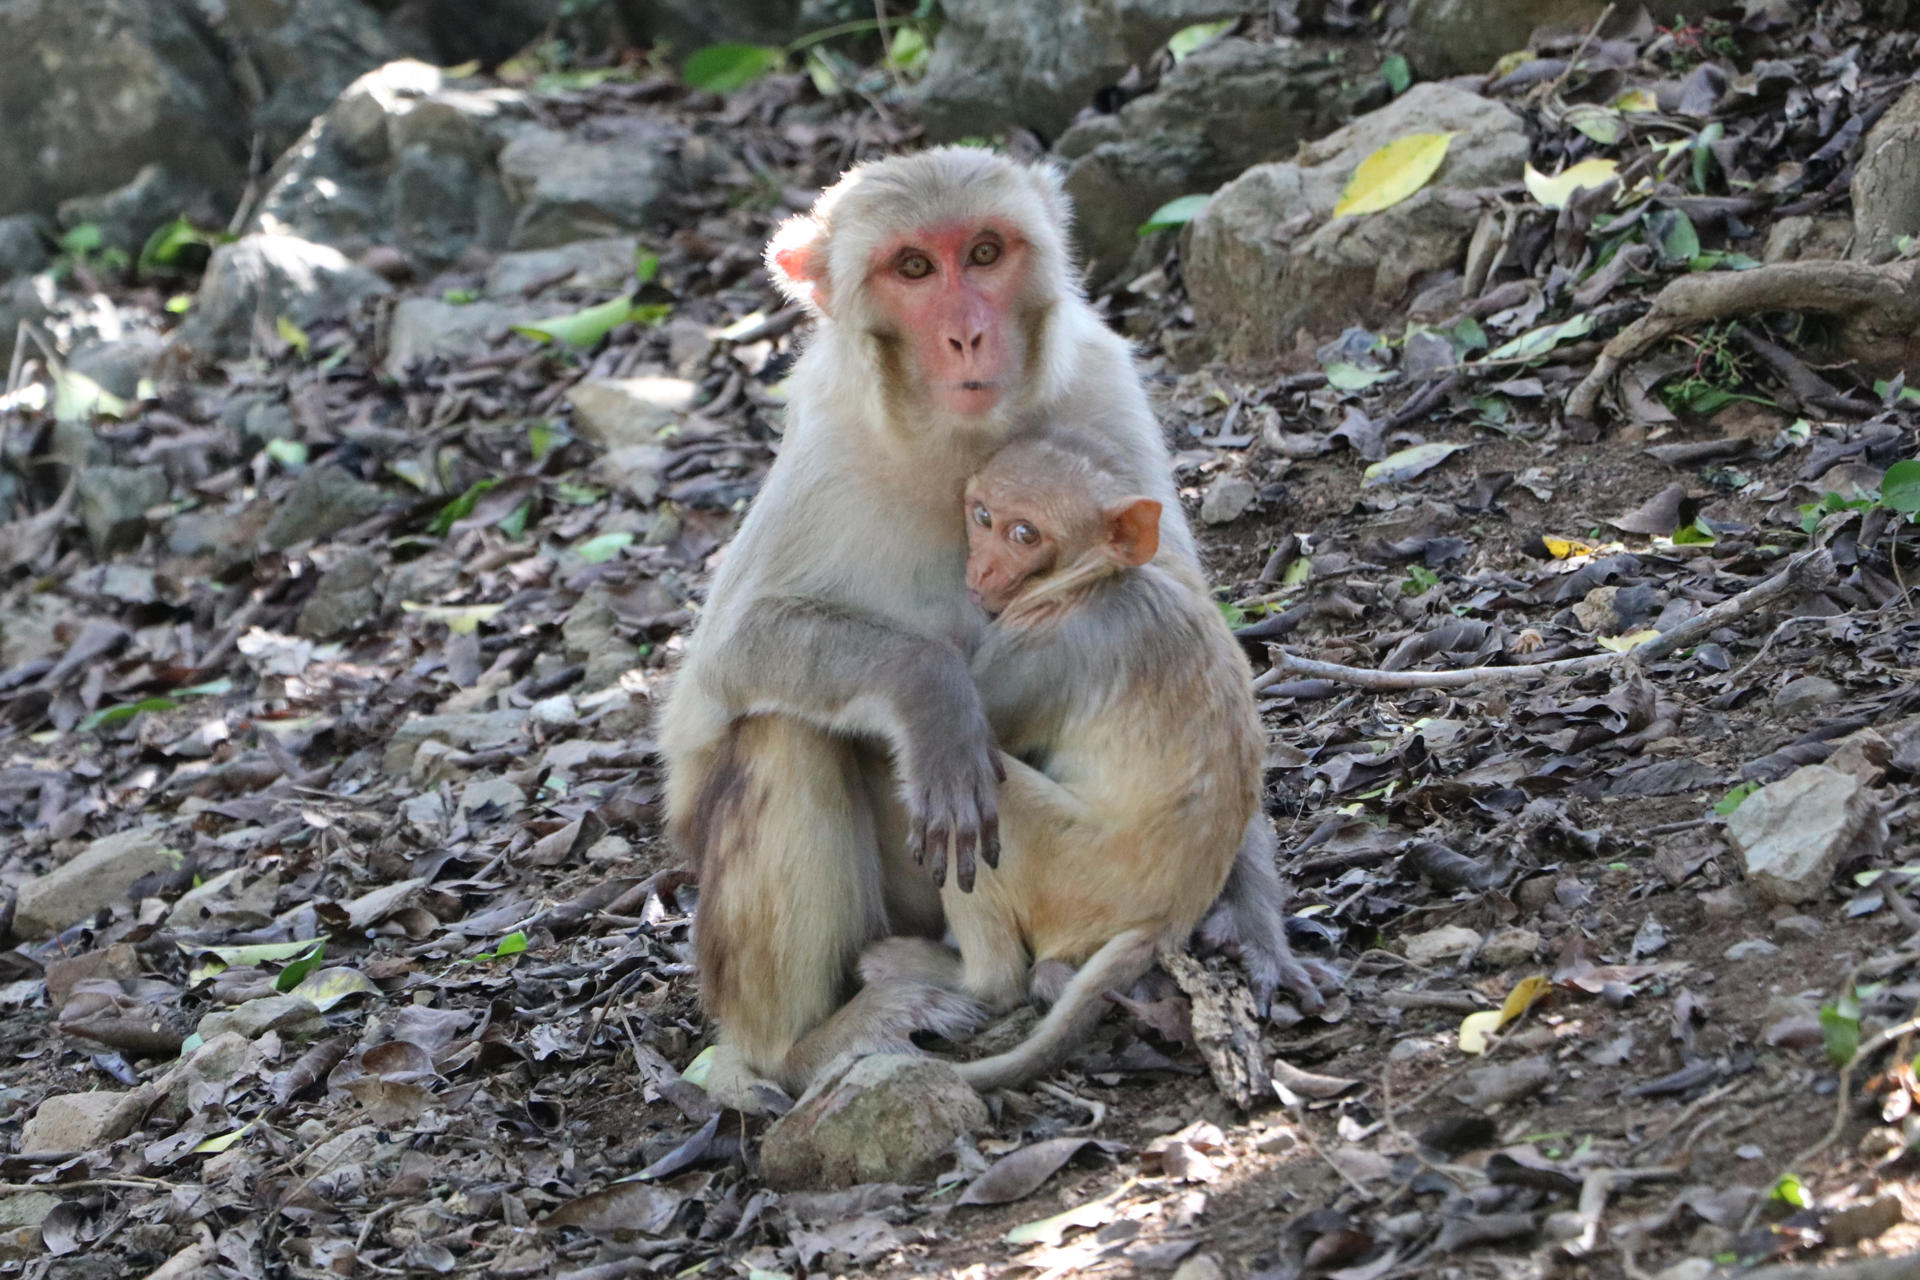 Fotografía cedida por Kandra Cruz, que muestra dos monos, en el Cayo Santiago (Puerto Rico). EFE/ Kandra Cruz SOLO USO EDITORIAL/NO VENTAS/SOLO DISPONIBLE PARA ILUSTRAR LA NOTICIA QUE ACOMPAÑA/CRÉDITO OBLIGATORIO